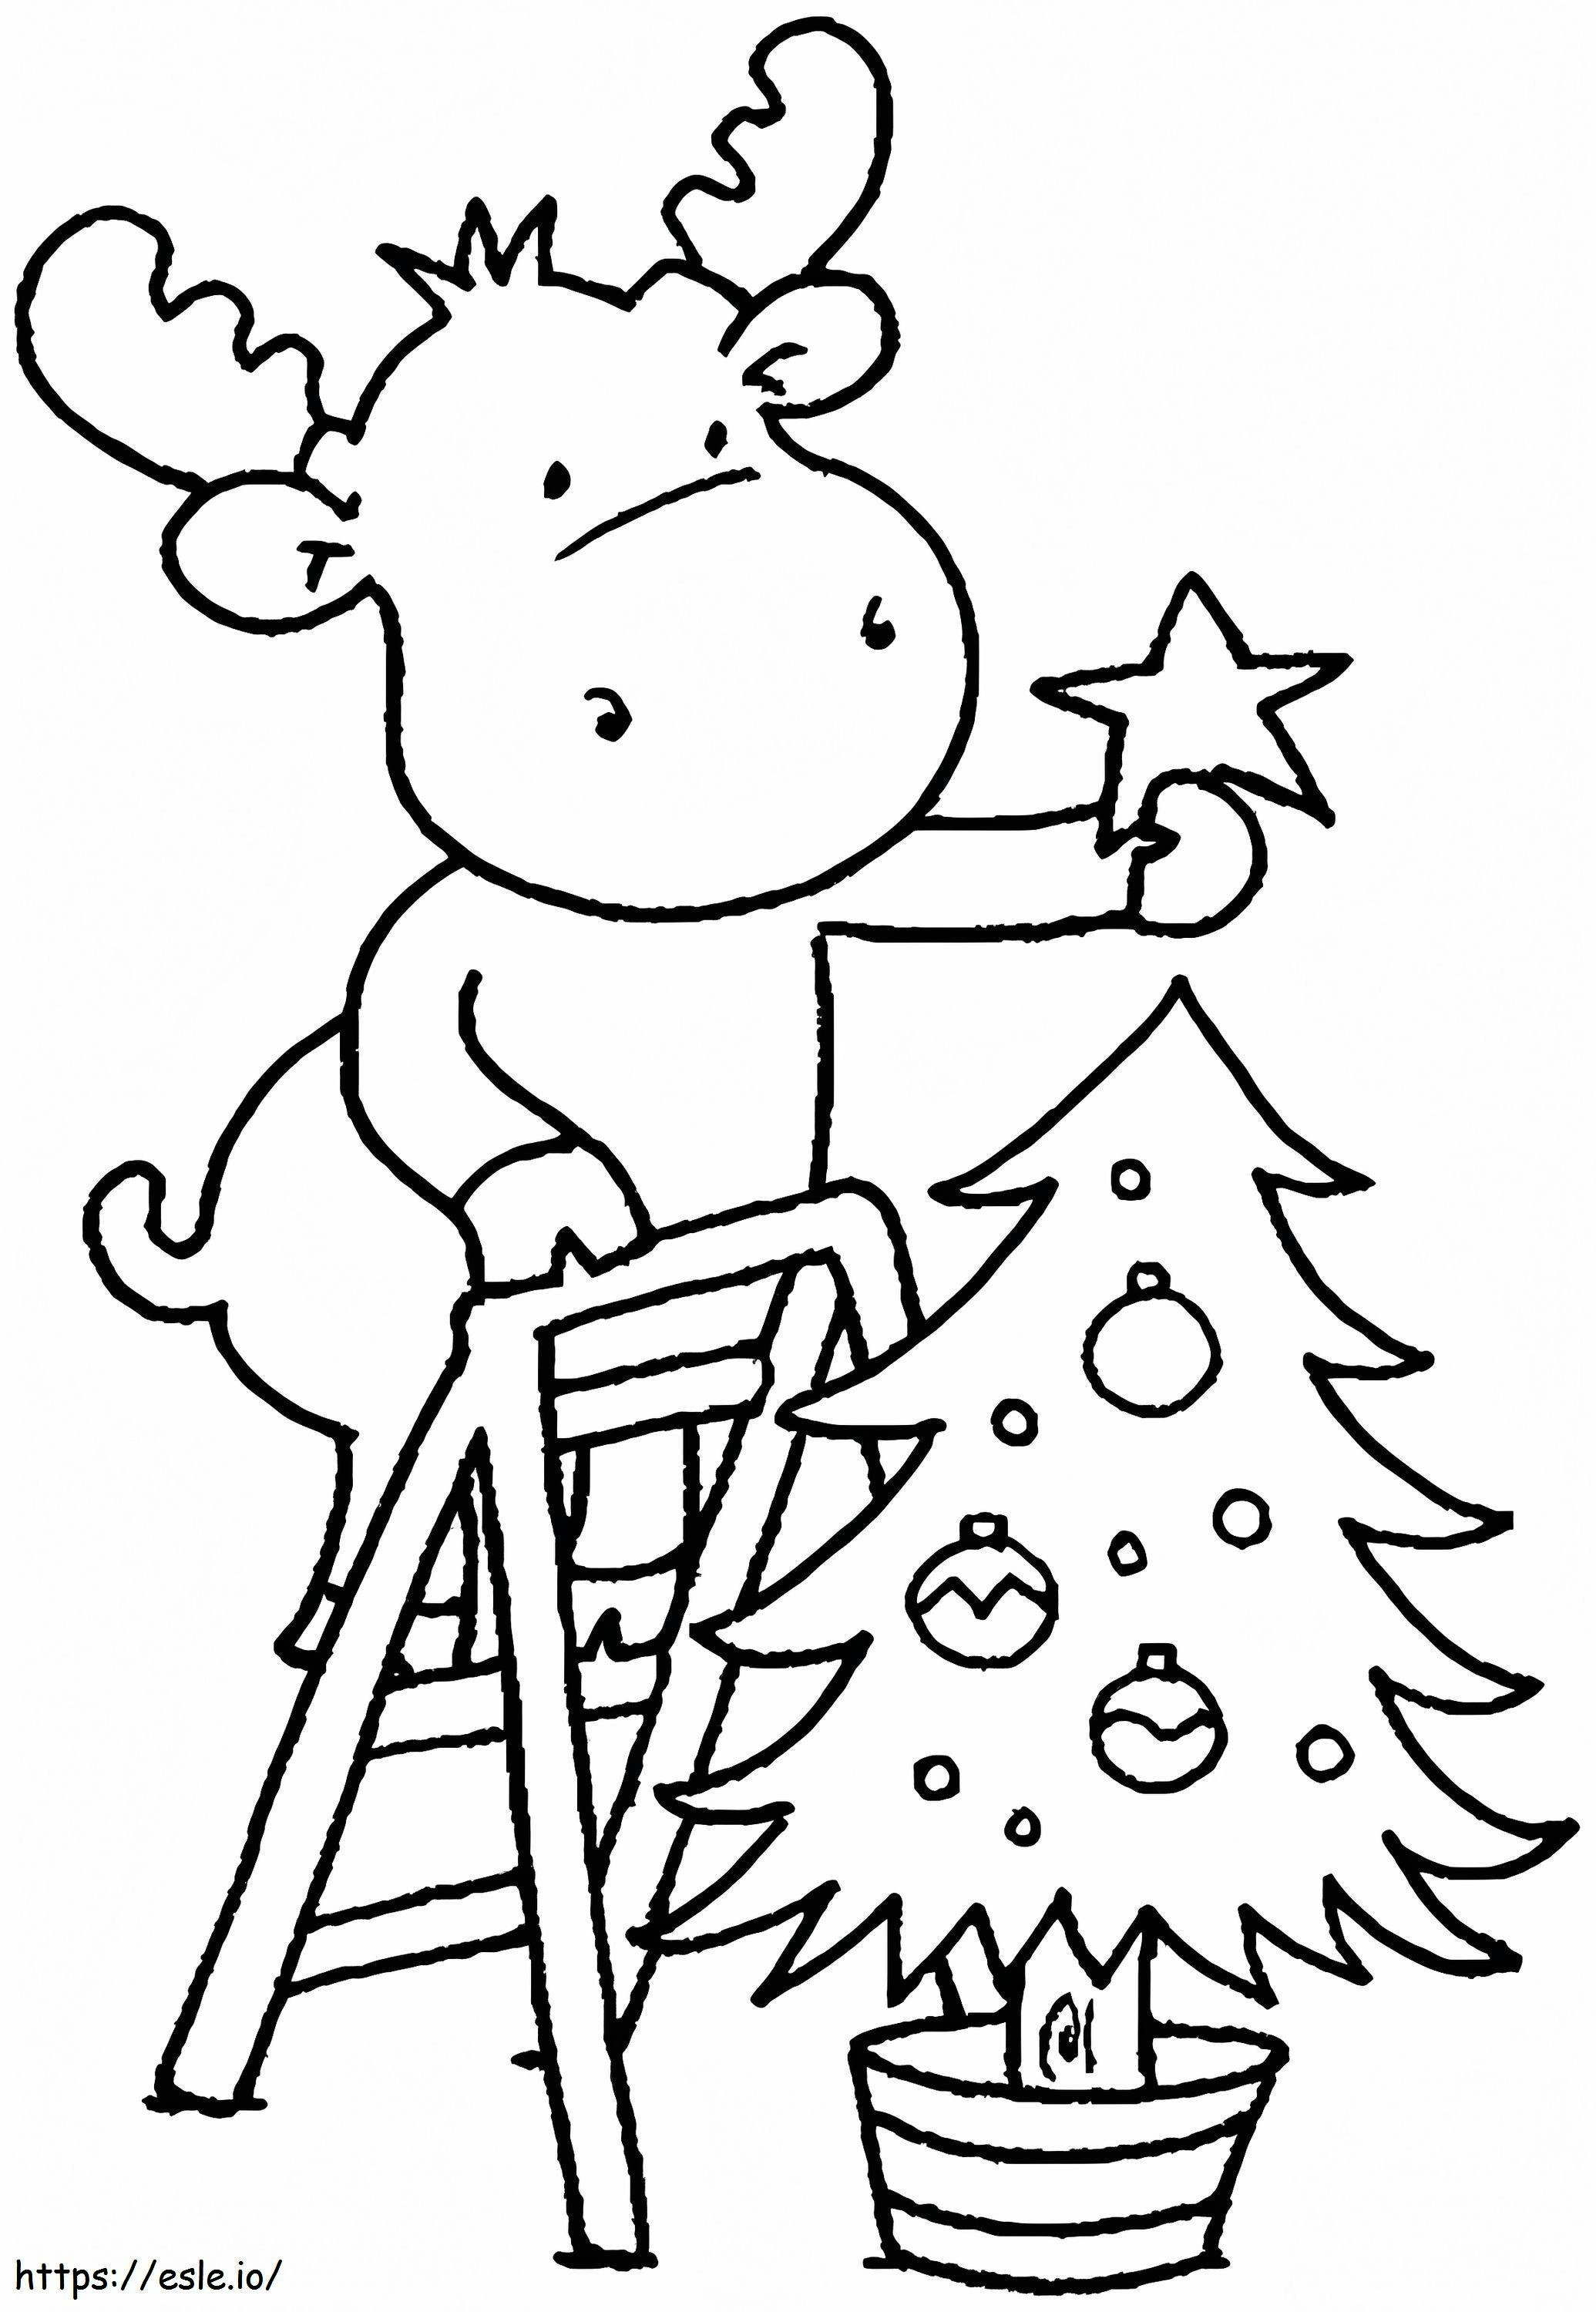 Coloriage 1541725061_Coloring Pages De Noël Coloriage Gratuit Pour Les Tout-petits Images De Coloriage De Noël Pour Les Enfants D'âge Préscolaire à imprimer dessin